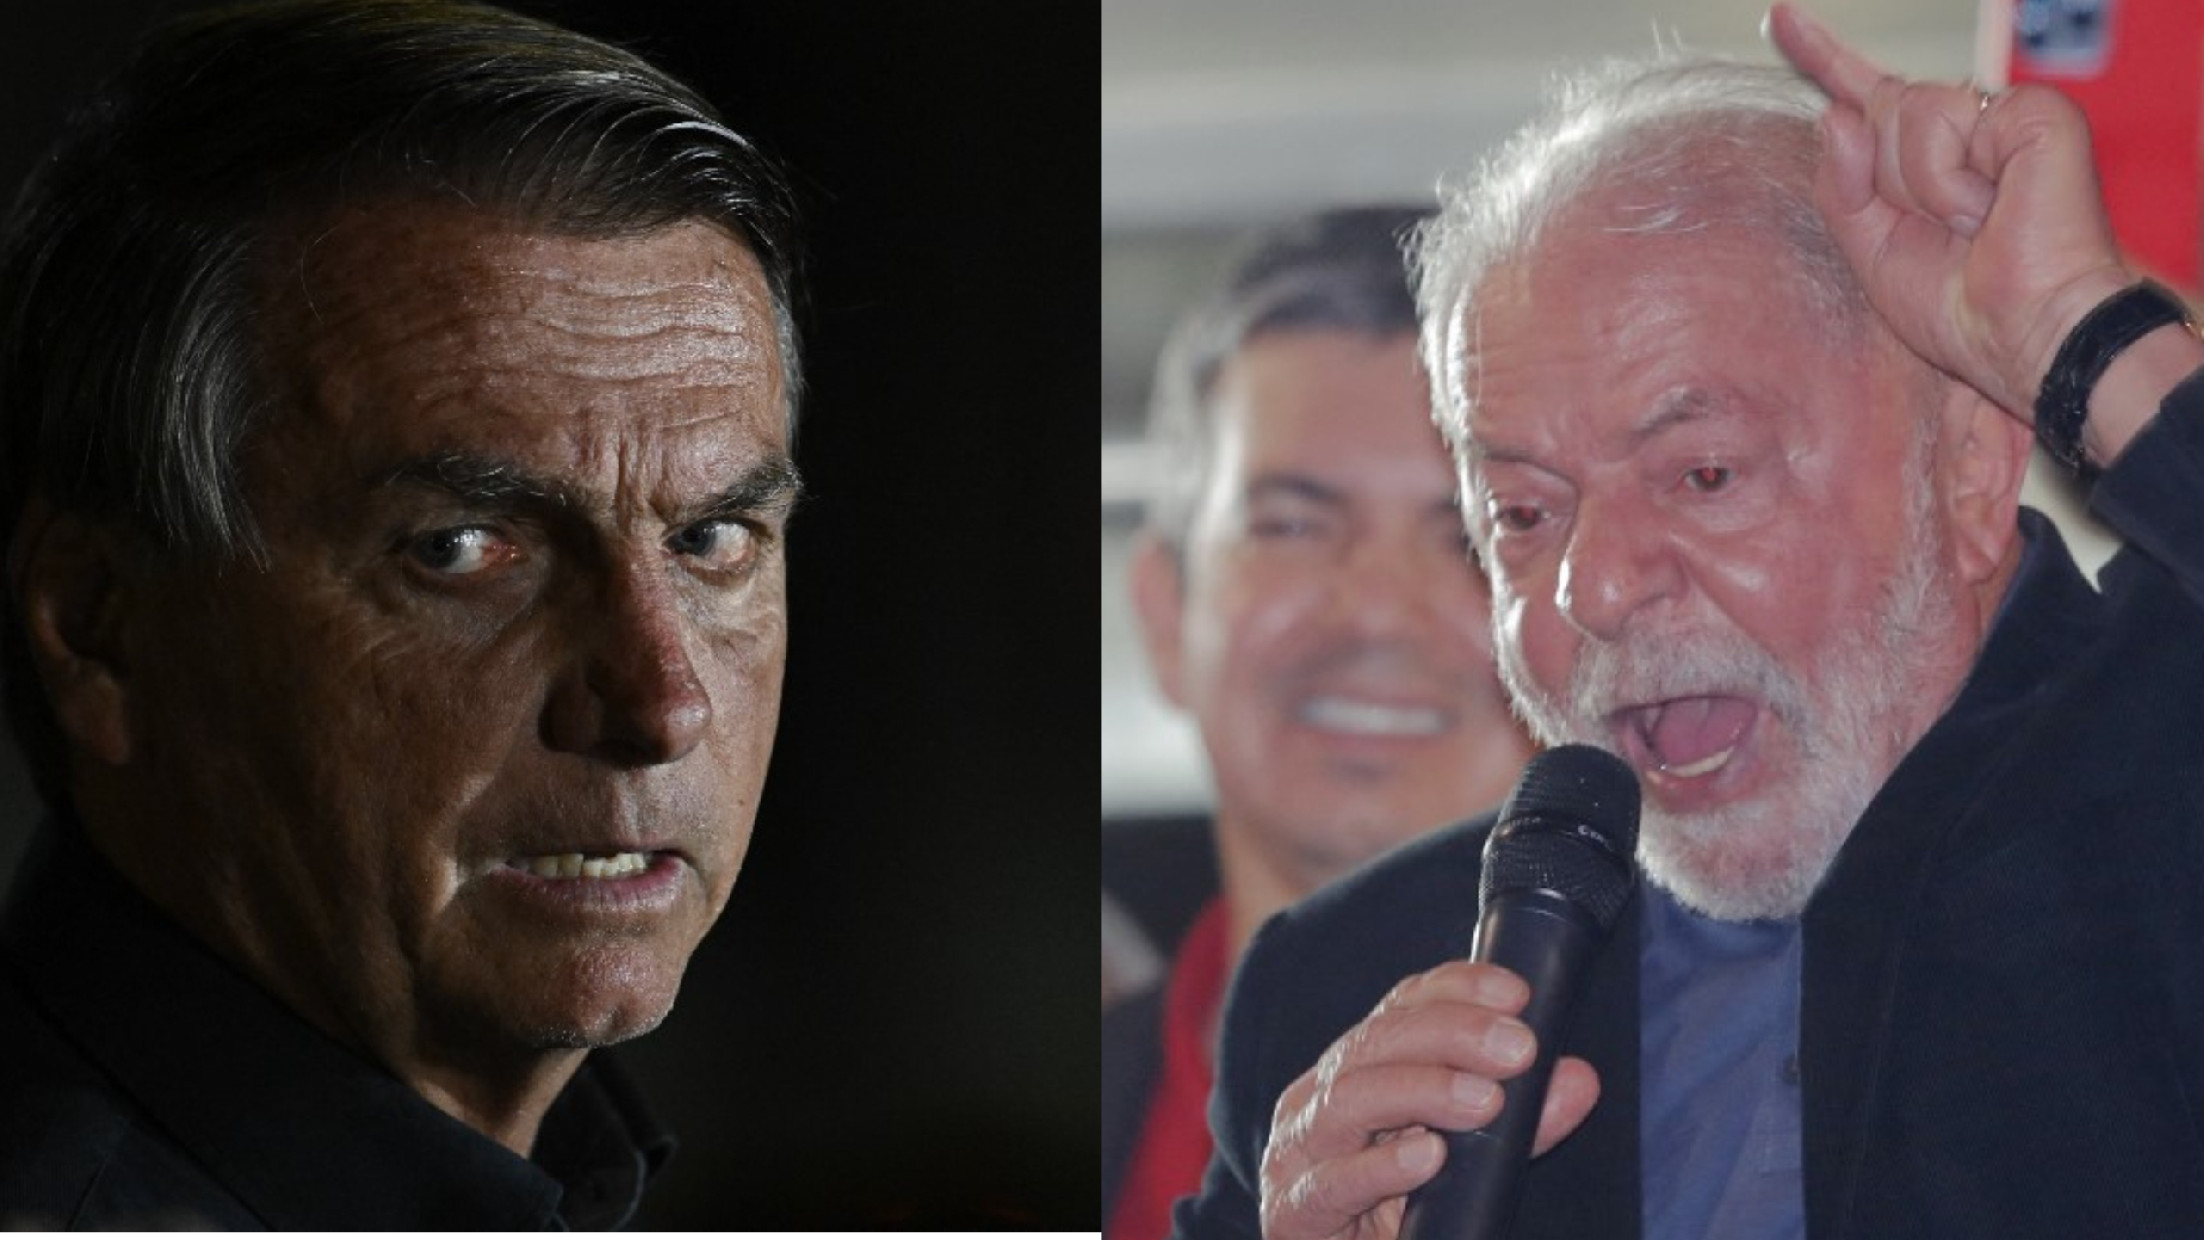 Lula népirtással vádolja Bolsonarót